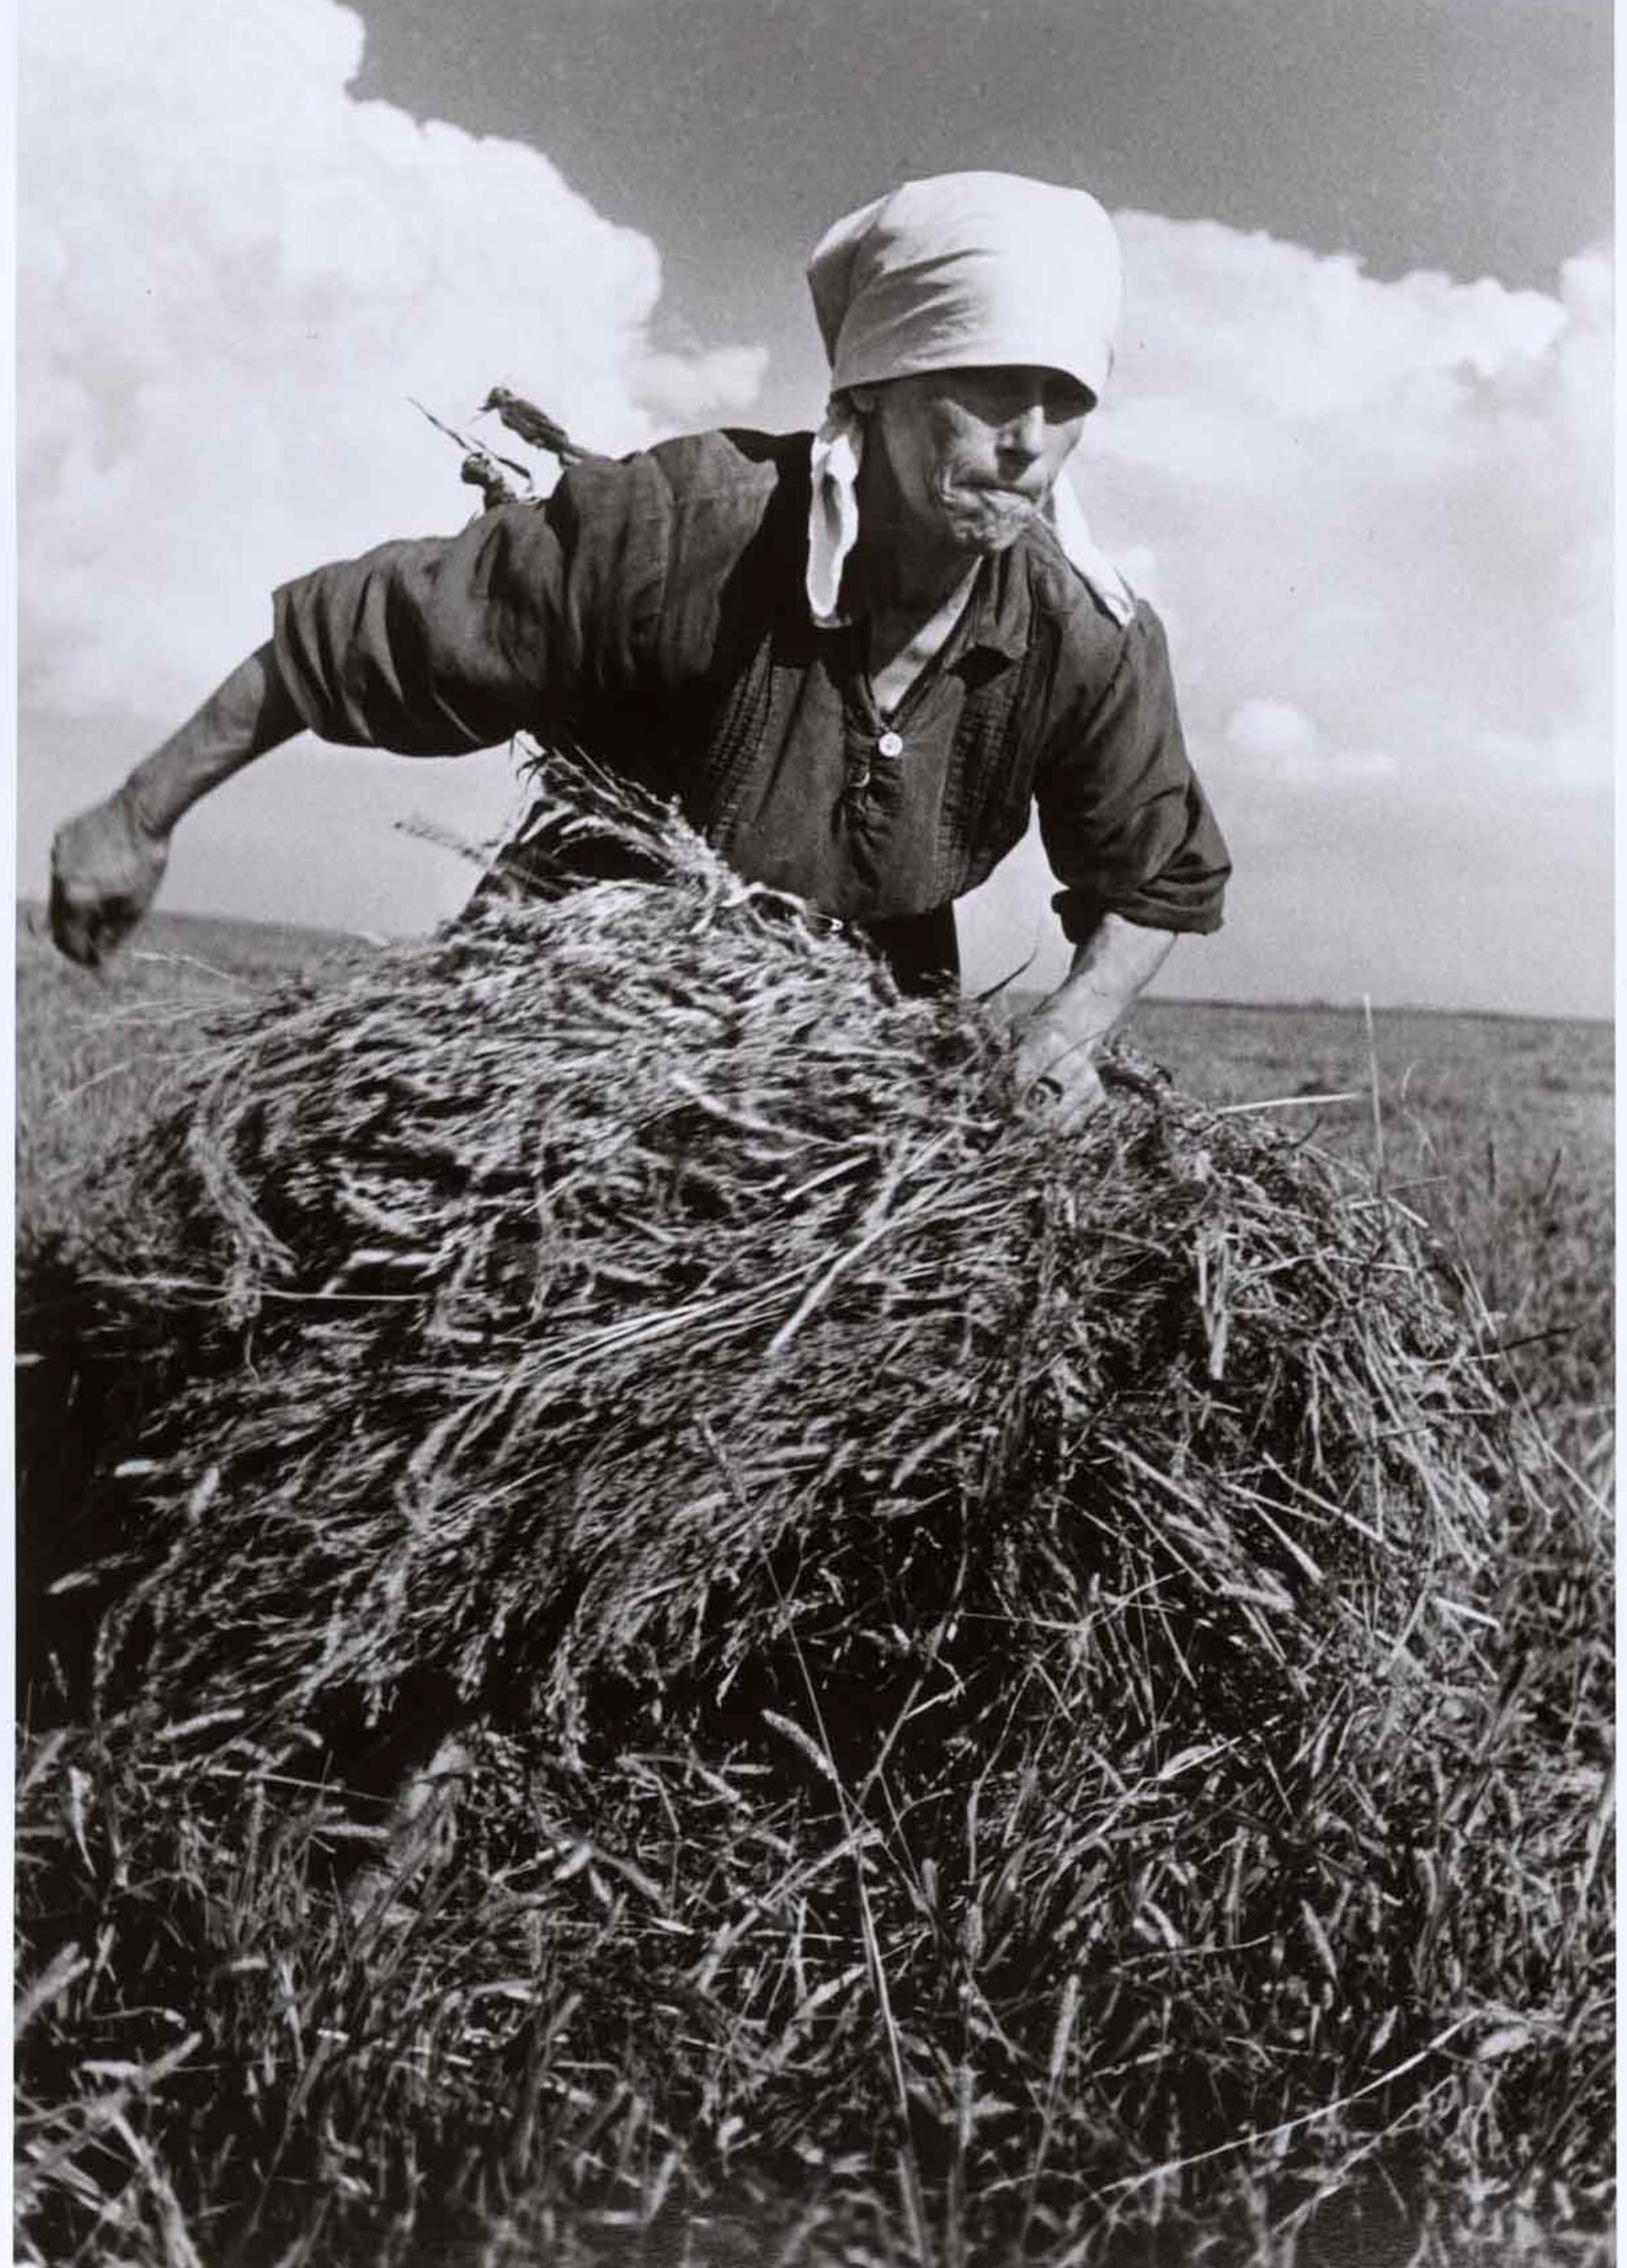 Женщина собирает тюк сена в колхозе, Актау, СССР, август 1947 год. Фотограф Роберт Капа